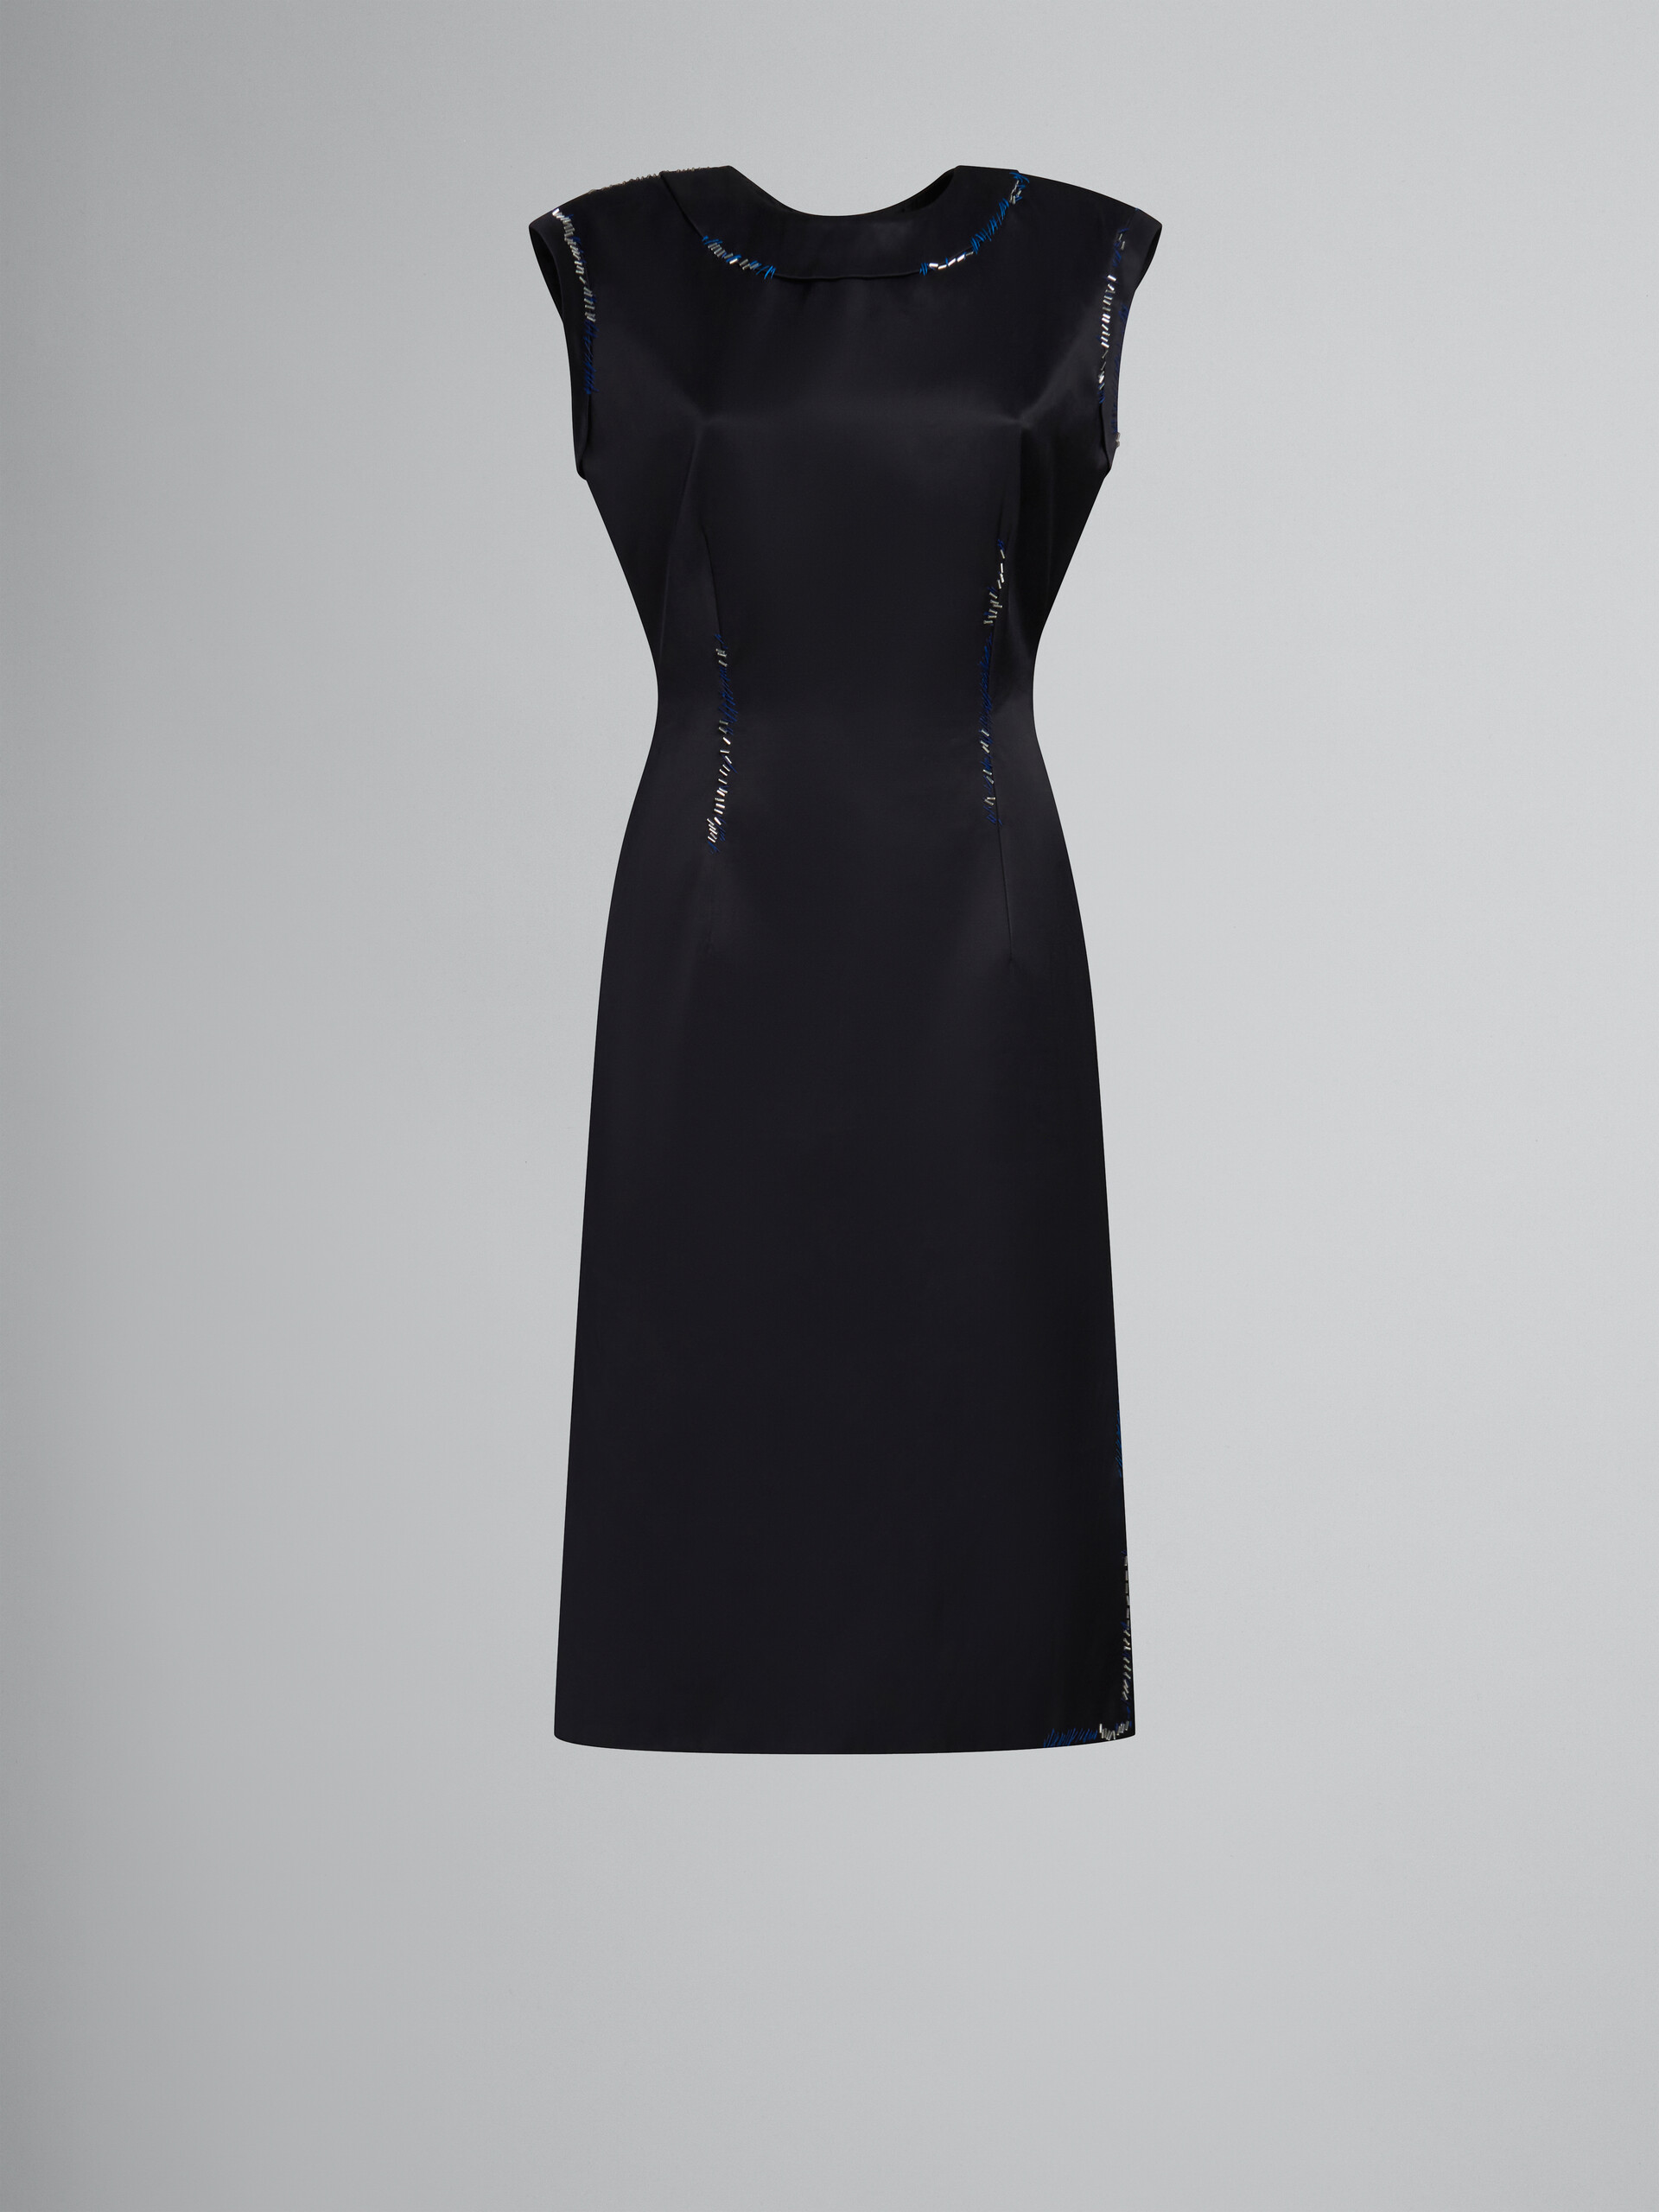 Vestido negro ajustado de satén duquesa con cuentas efecto remiendo - Vestidos - Image 1